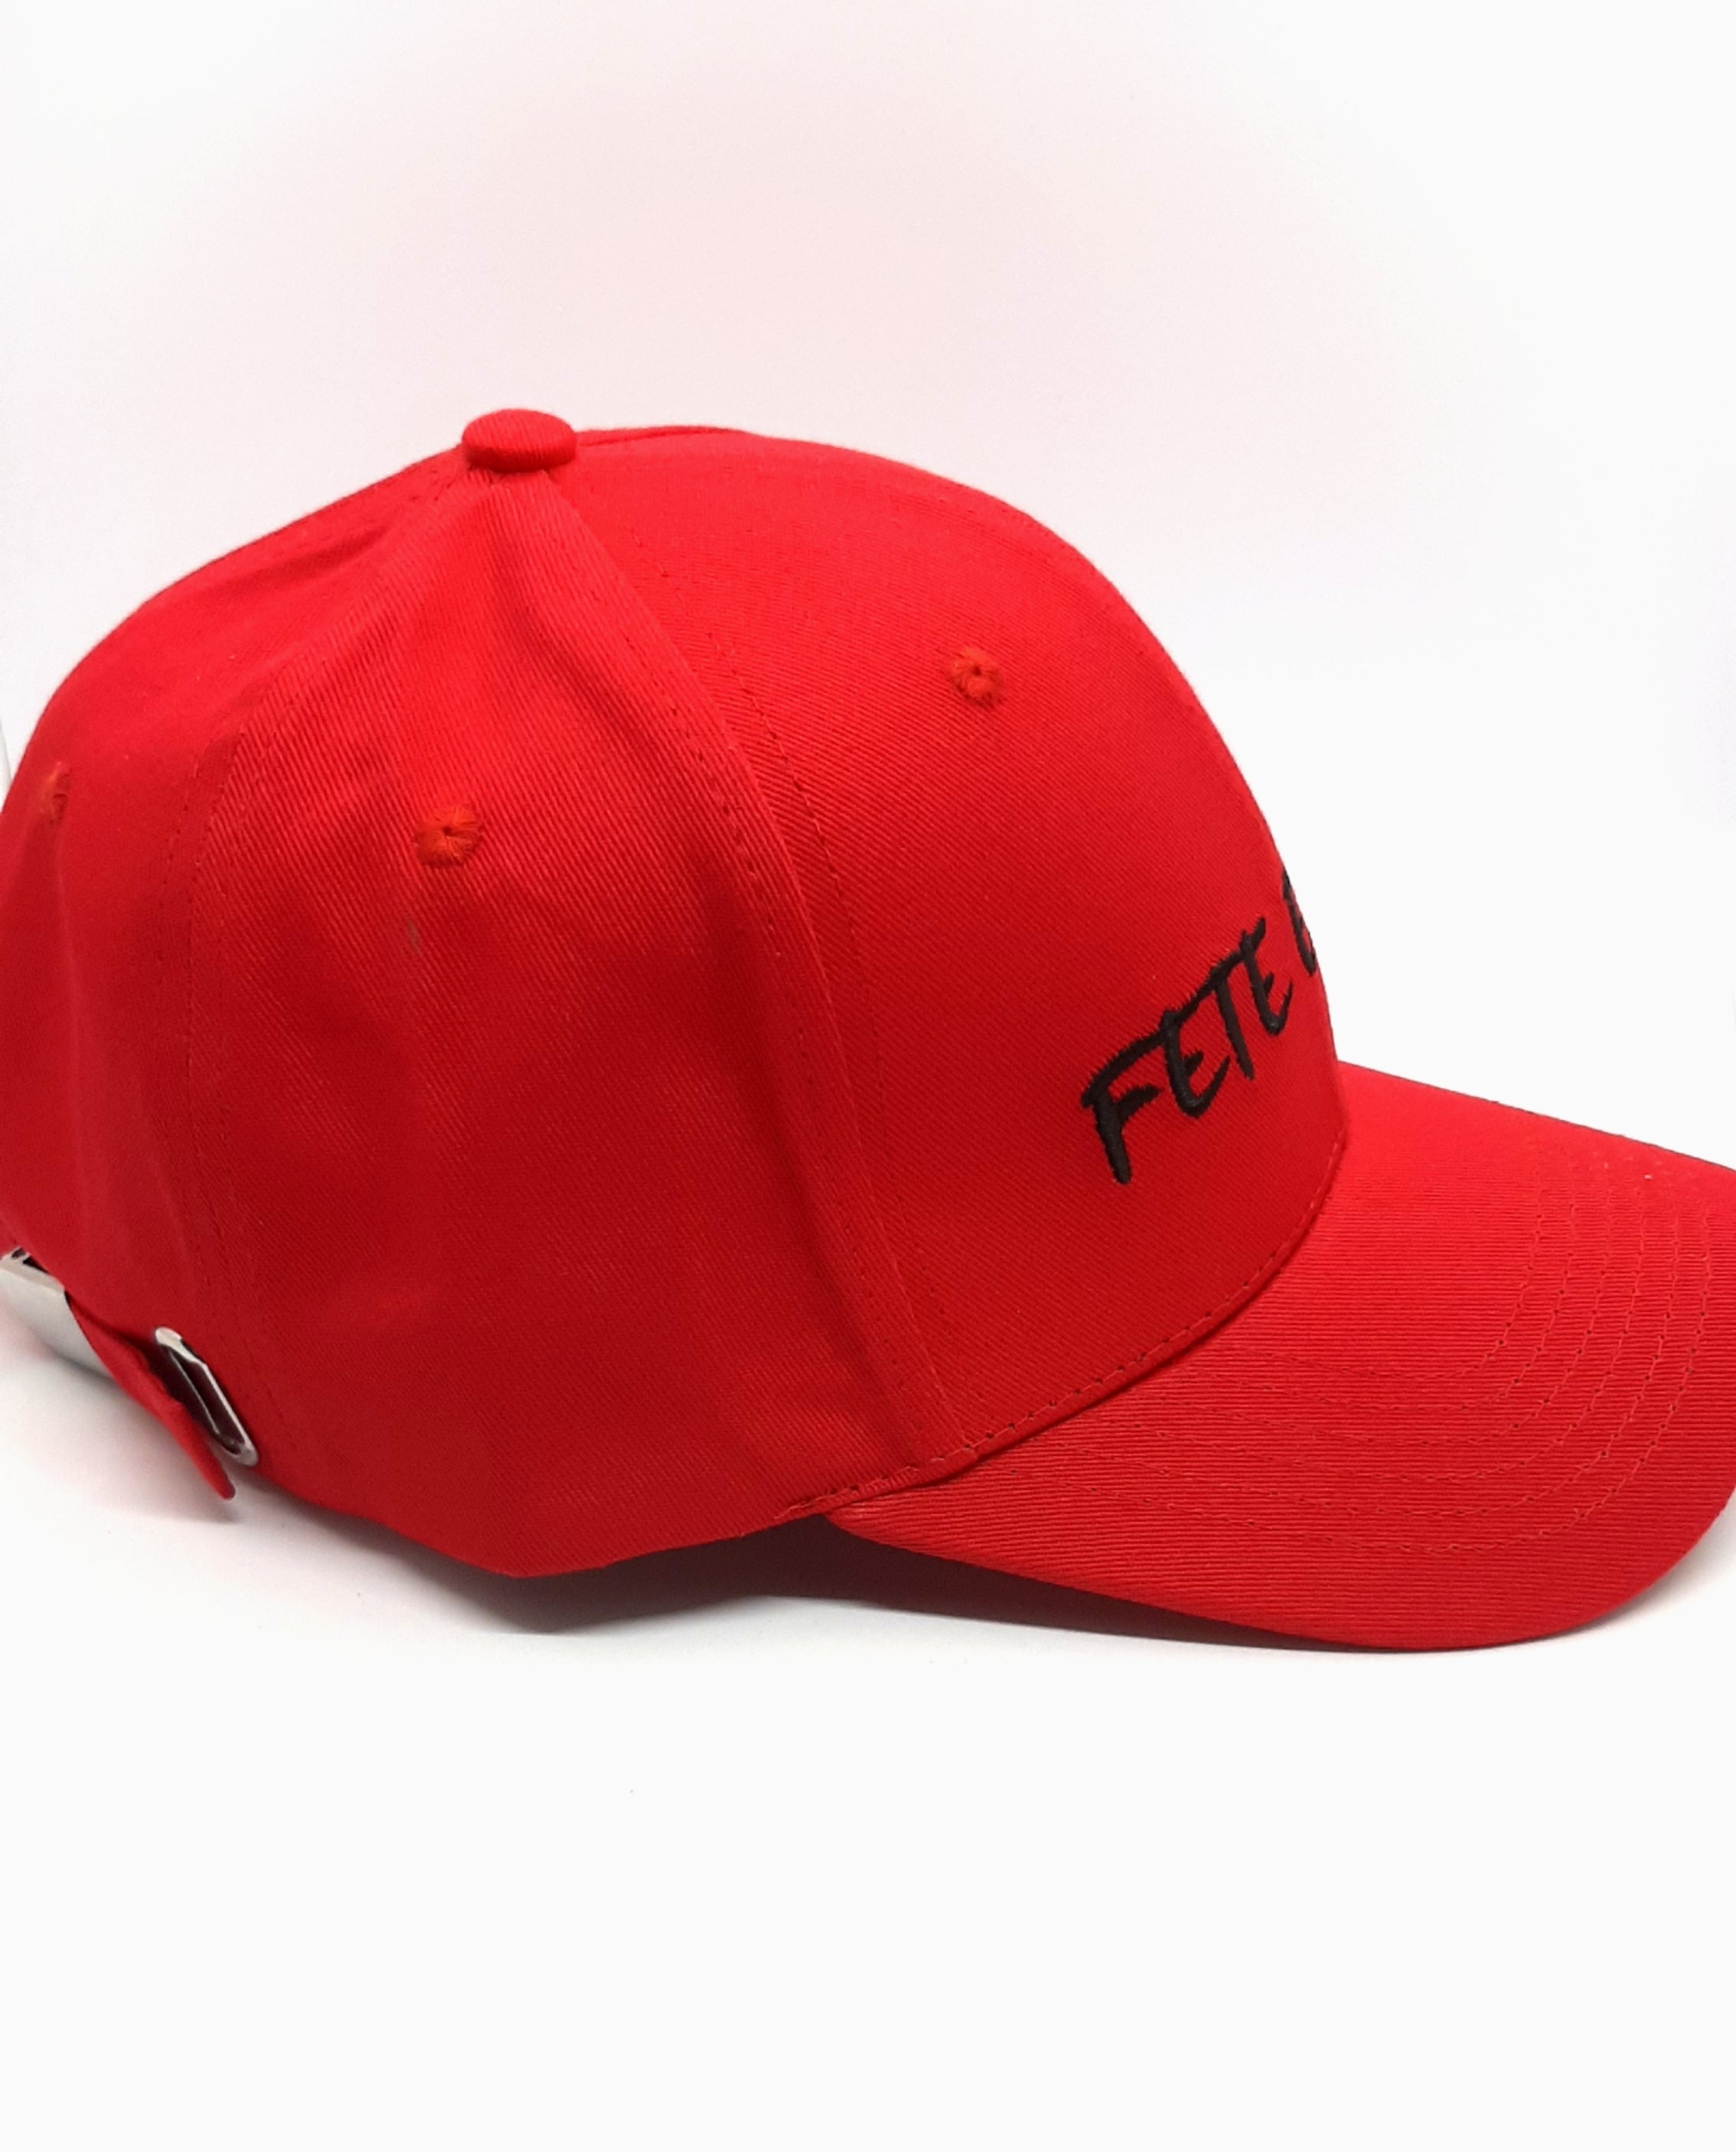 Fete Expert Signature Caps - Red